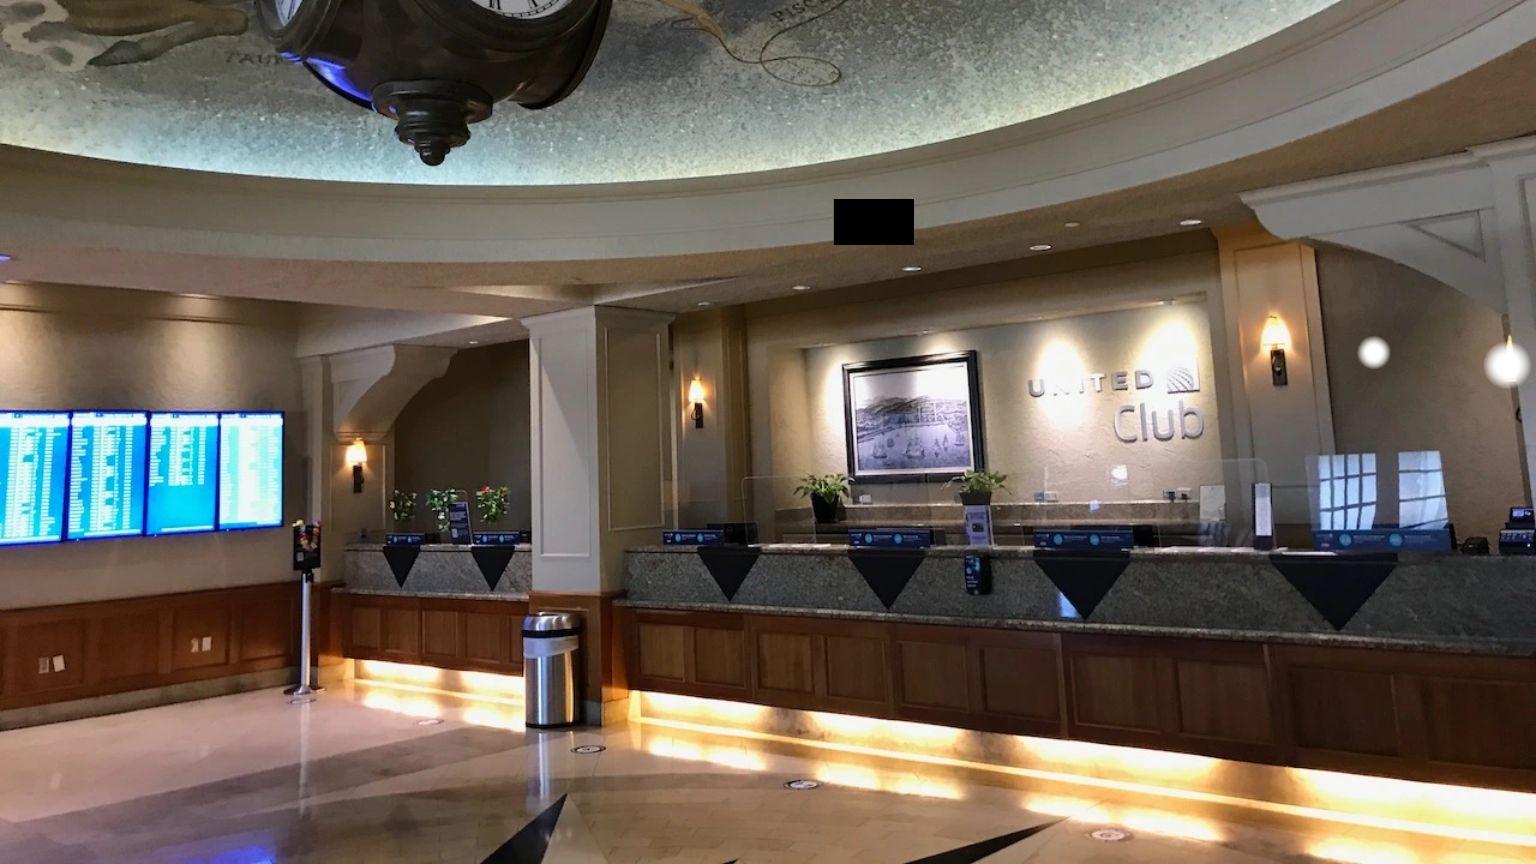 United Club SFO Terminal 3 Lounge – Concourse F